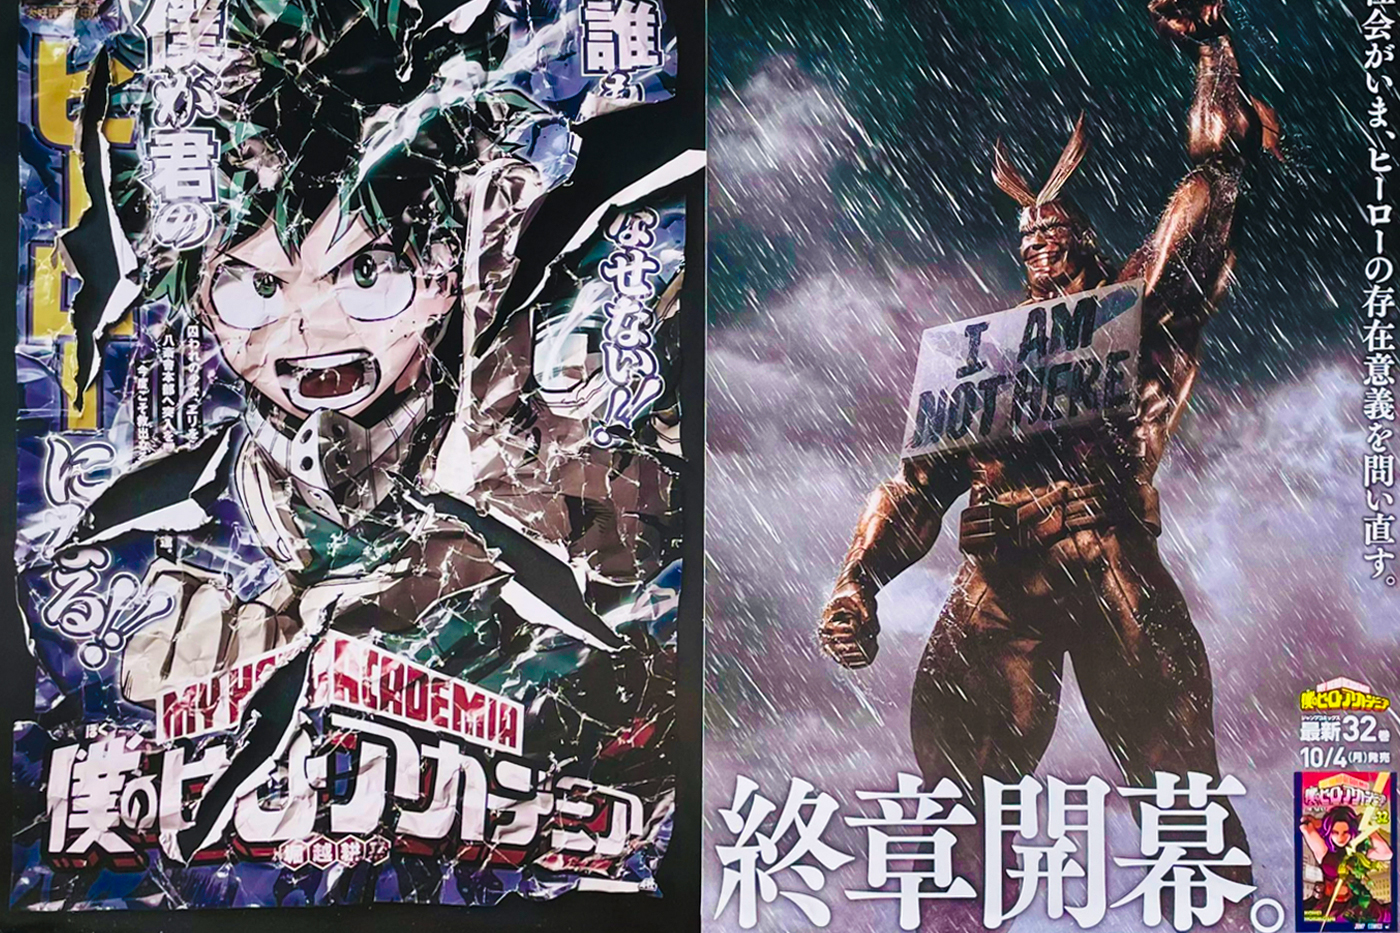 ‘My Hero Academia’ Manga Final Chapter Poster Japan manga anime Japan Tokyo Shueisha